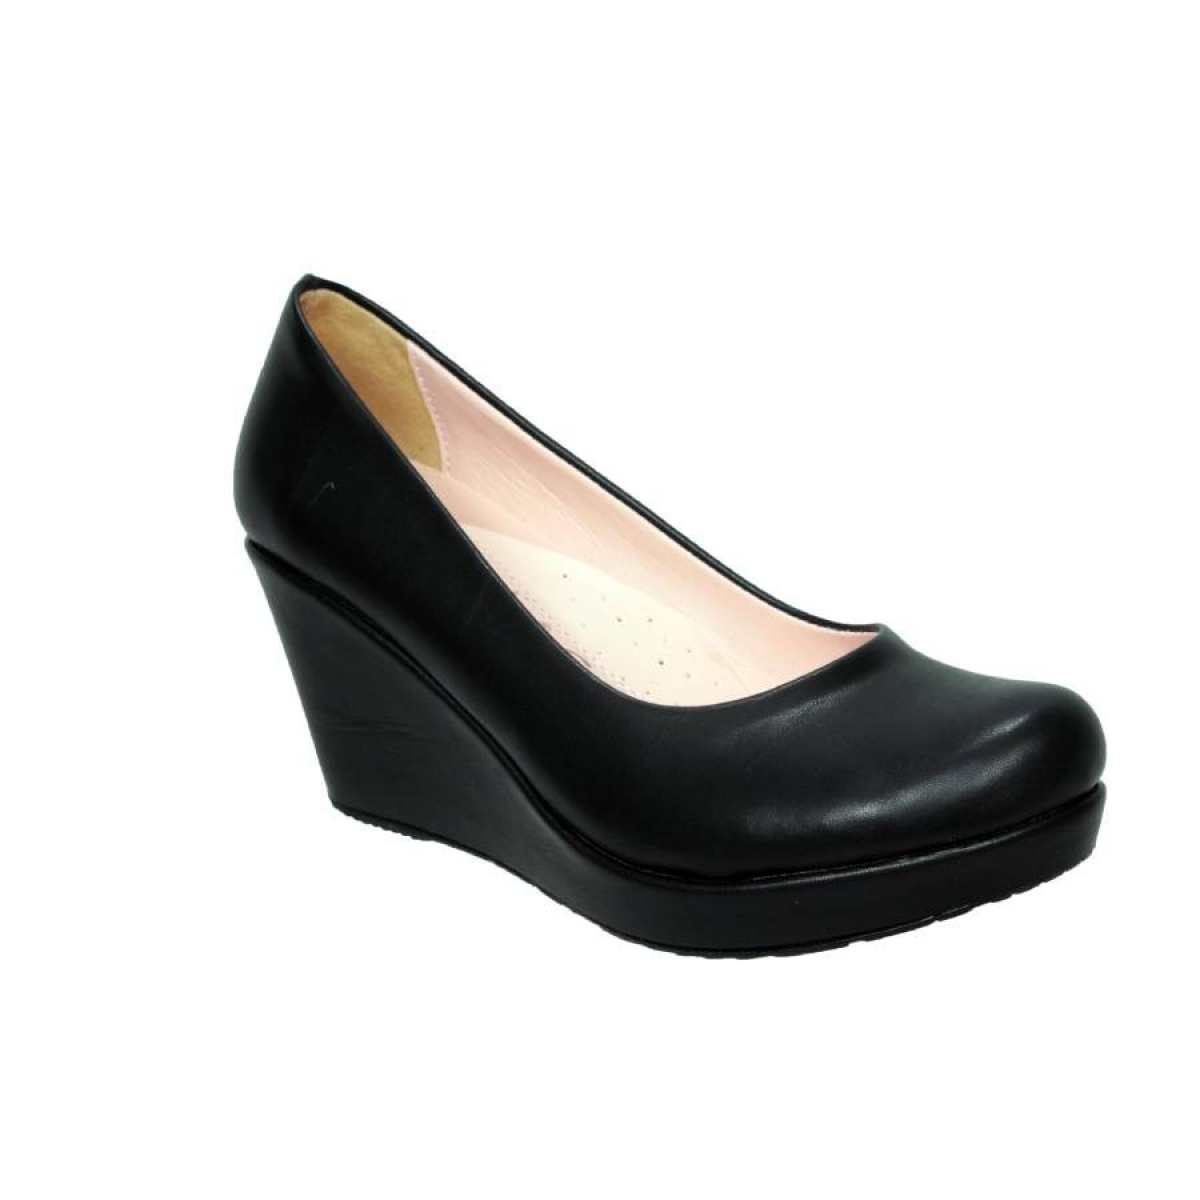 Flo Siyah DolguPlatform Topuk Kadın Ayakkabı Kalıbı Bir Numara Dardır. 1